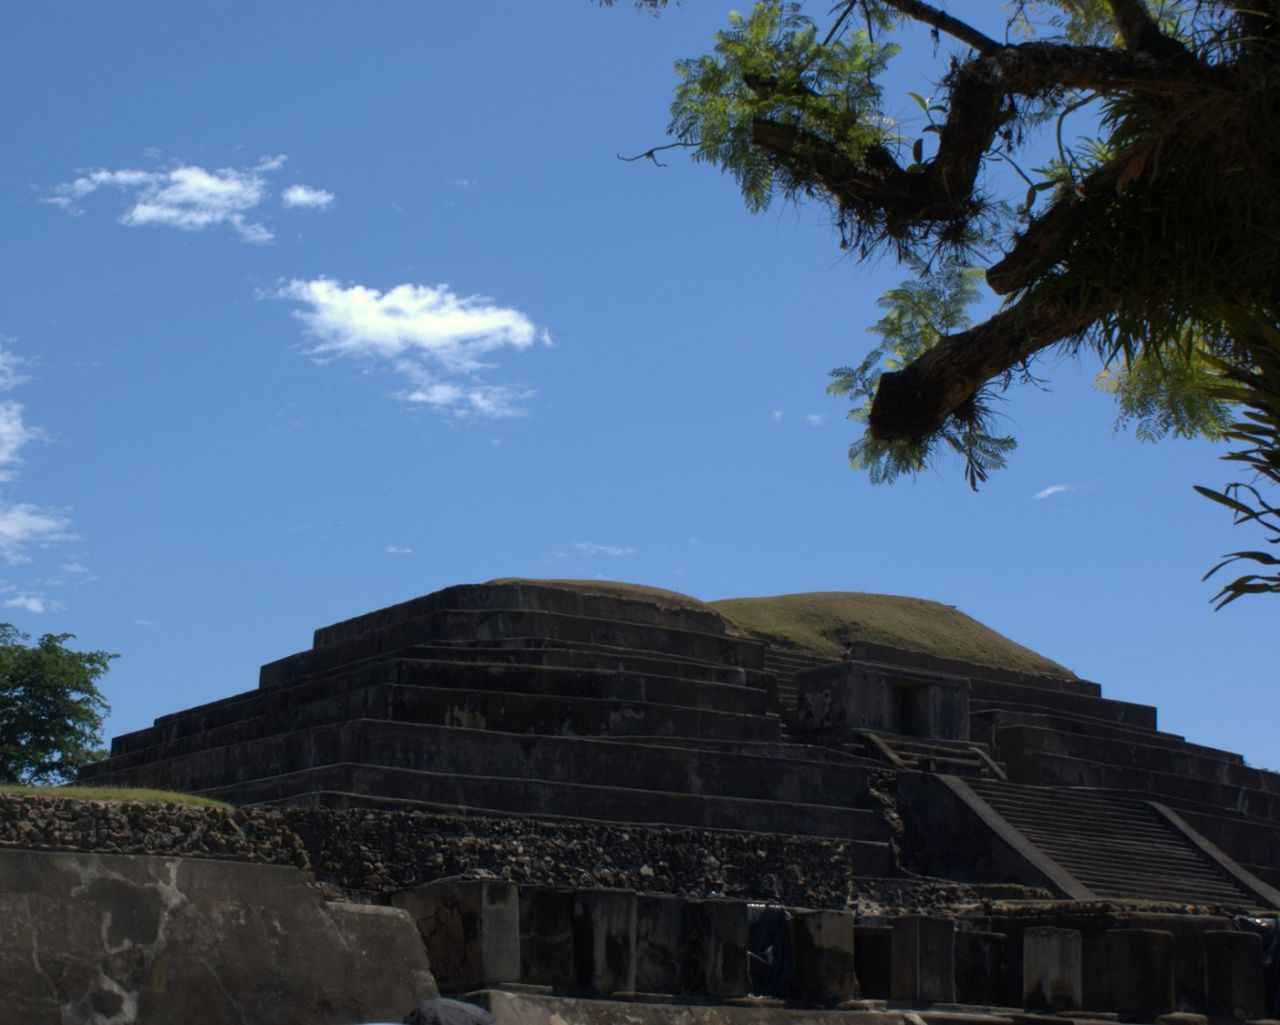 Далее наш путь лежит в город Чальчуапа, где находится Тасумаль/Тацумаль. На языке киче это означает «Пирамида, где жертвы были сожжены» Город строился в тринадцать этапов в течение 750 лет. Центральная и наибольшая (до 30 м в высоту) структура города - ступенчатая церемониальная платформа, которая несет отпечаток стиля Теотиуакана (Мексика), а под ней и около обнаружены следы платформы, датирующейся 100-200 годами нашей эры. - 2016 Сальвадор